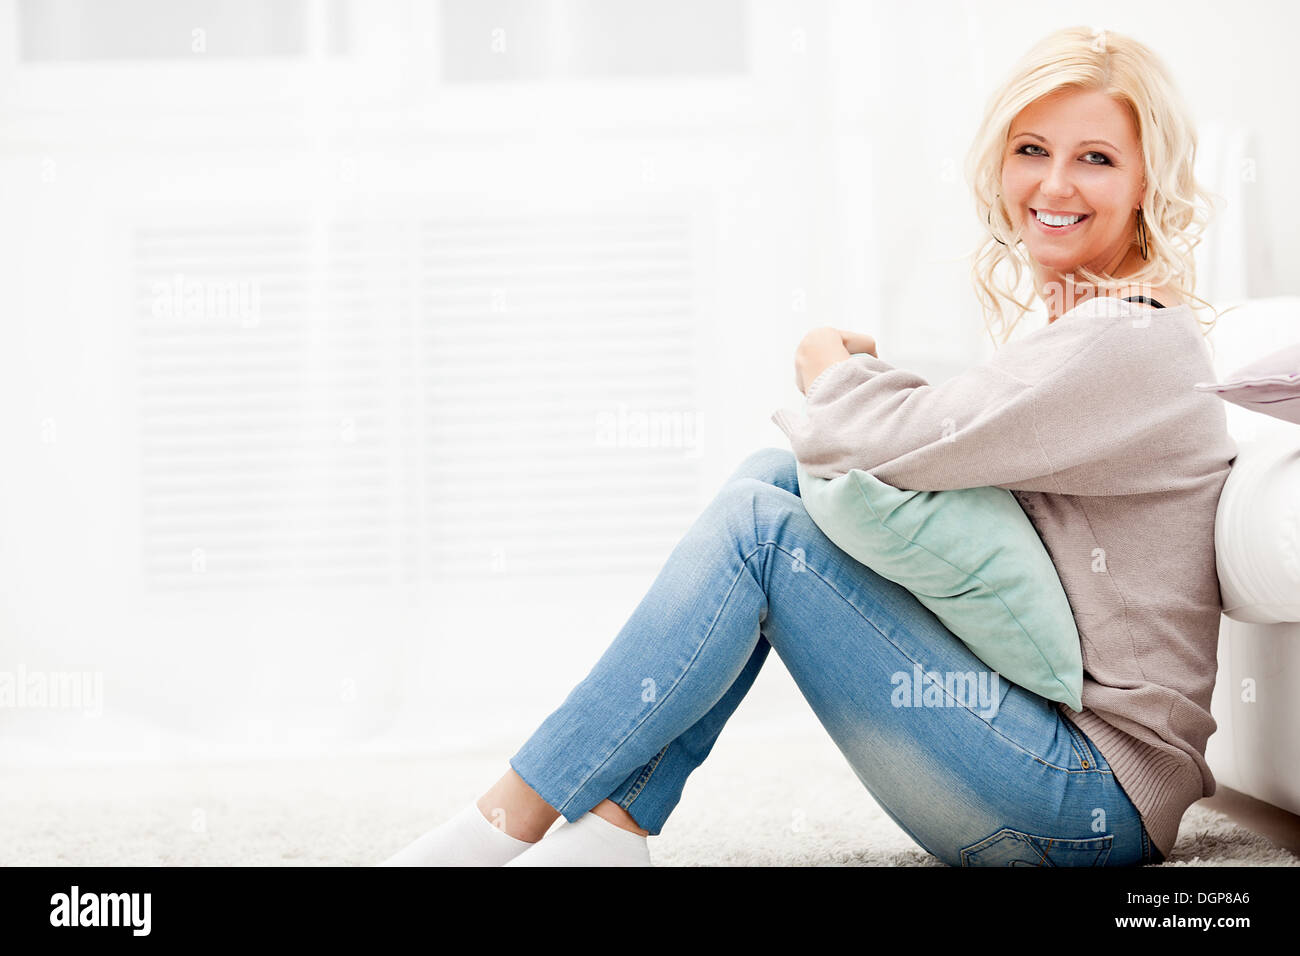 Sorridente ragazza seduta su un tappeto Foto Stock